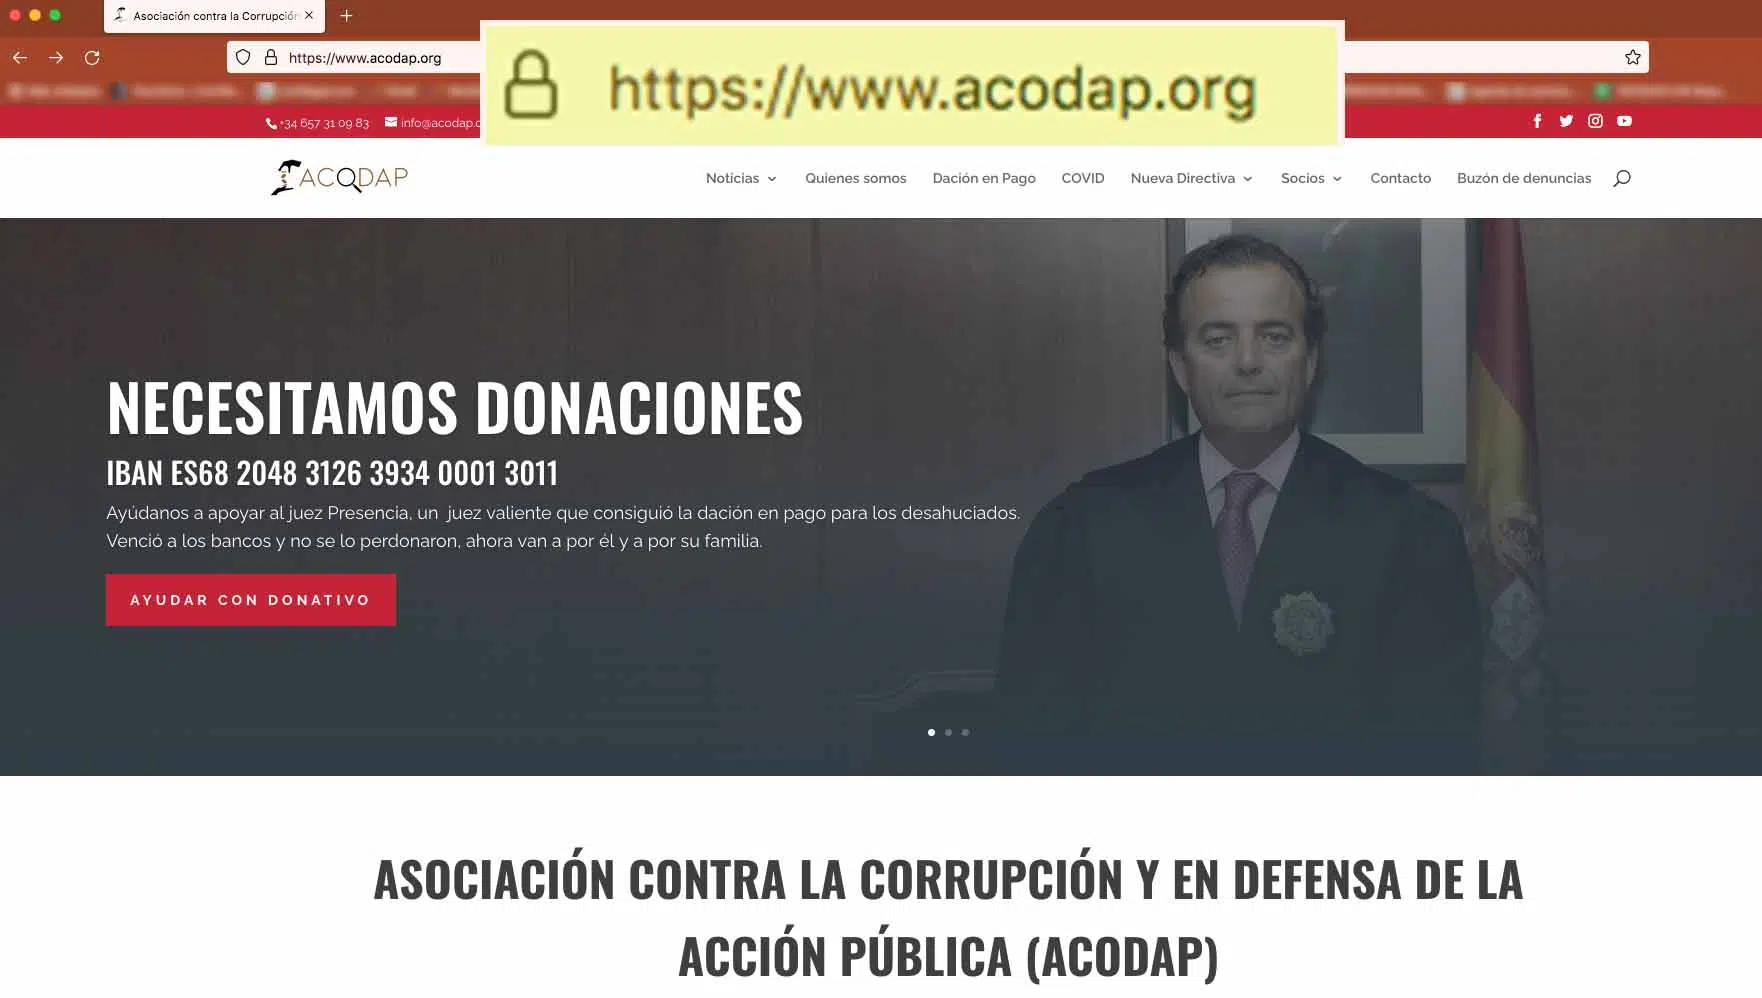 El magistrado Gadea ordena bloquear la nueva web que había abierto Presencia, acodap.org, y cerrar su canal de Youtube Acodap Noticias